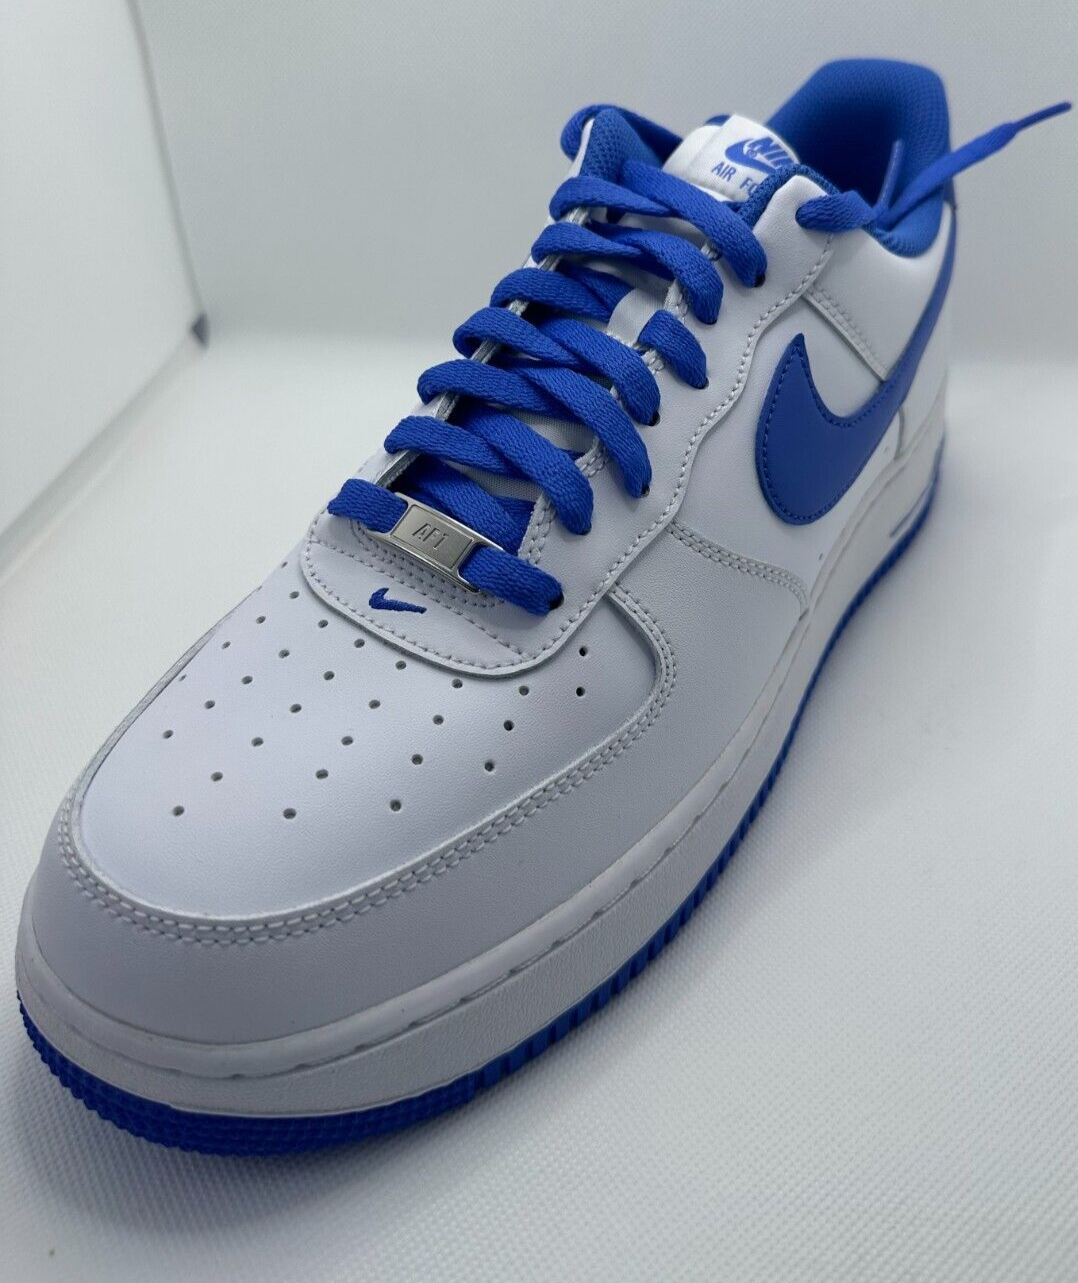 Men's Nike Air Force 1 '07 White/Medium Blue (DH7561 104) - 12 